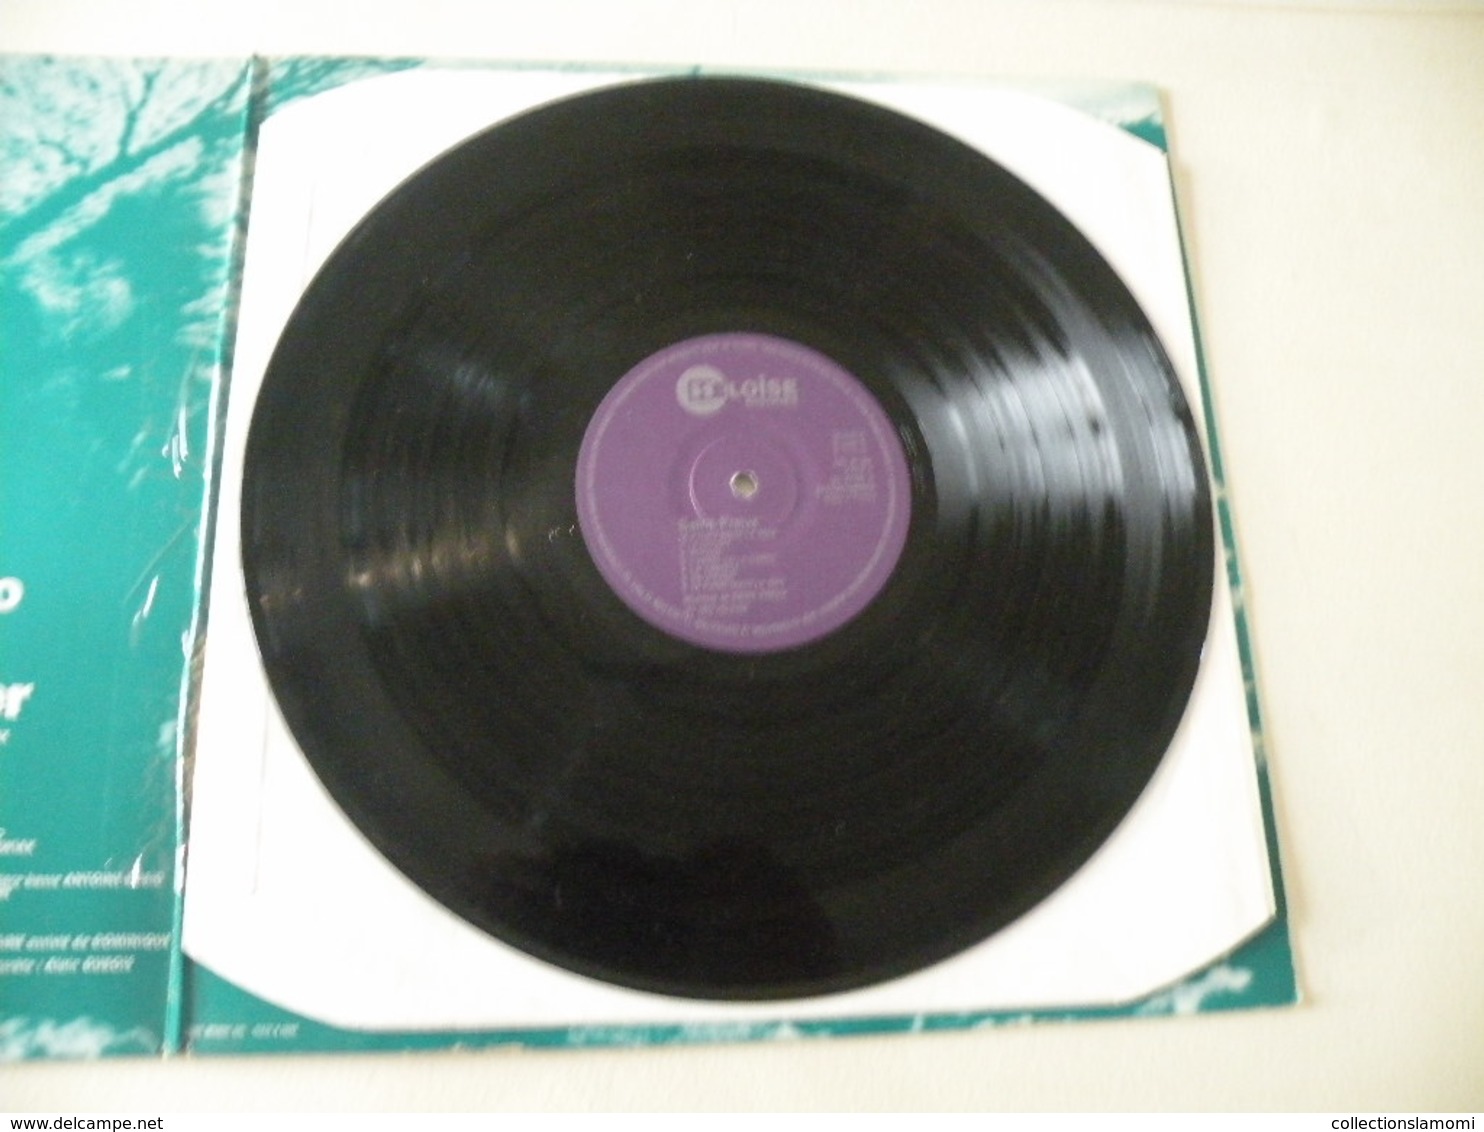 Saint Preux, Le Piano Sous La Mer 1972 - (Titres Sur Photos) - Vinyle 33 T LP - Musicals